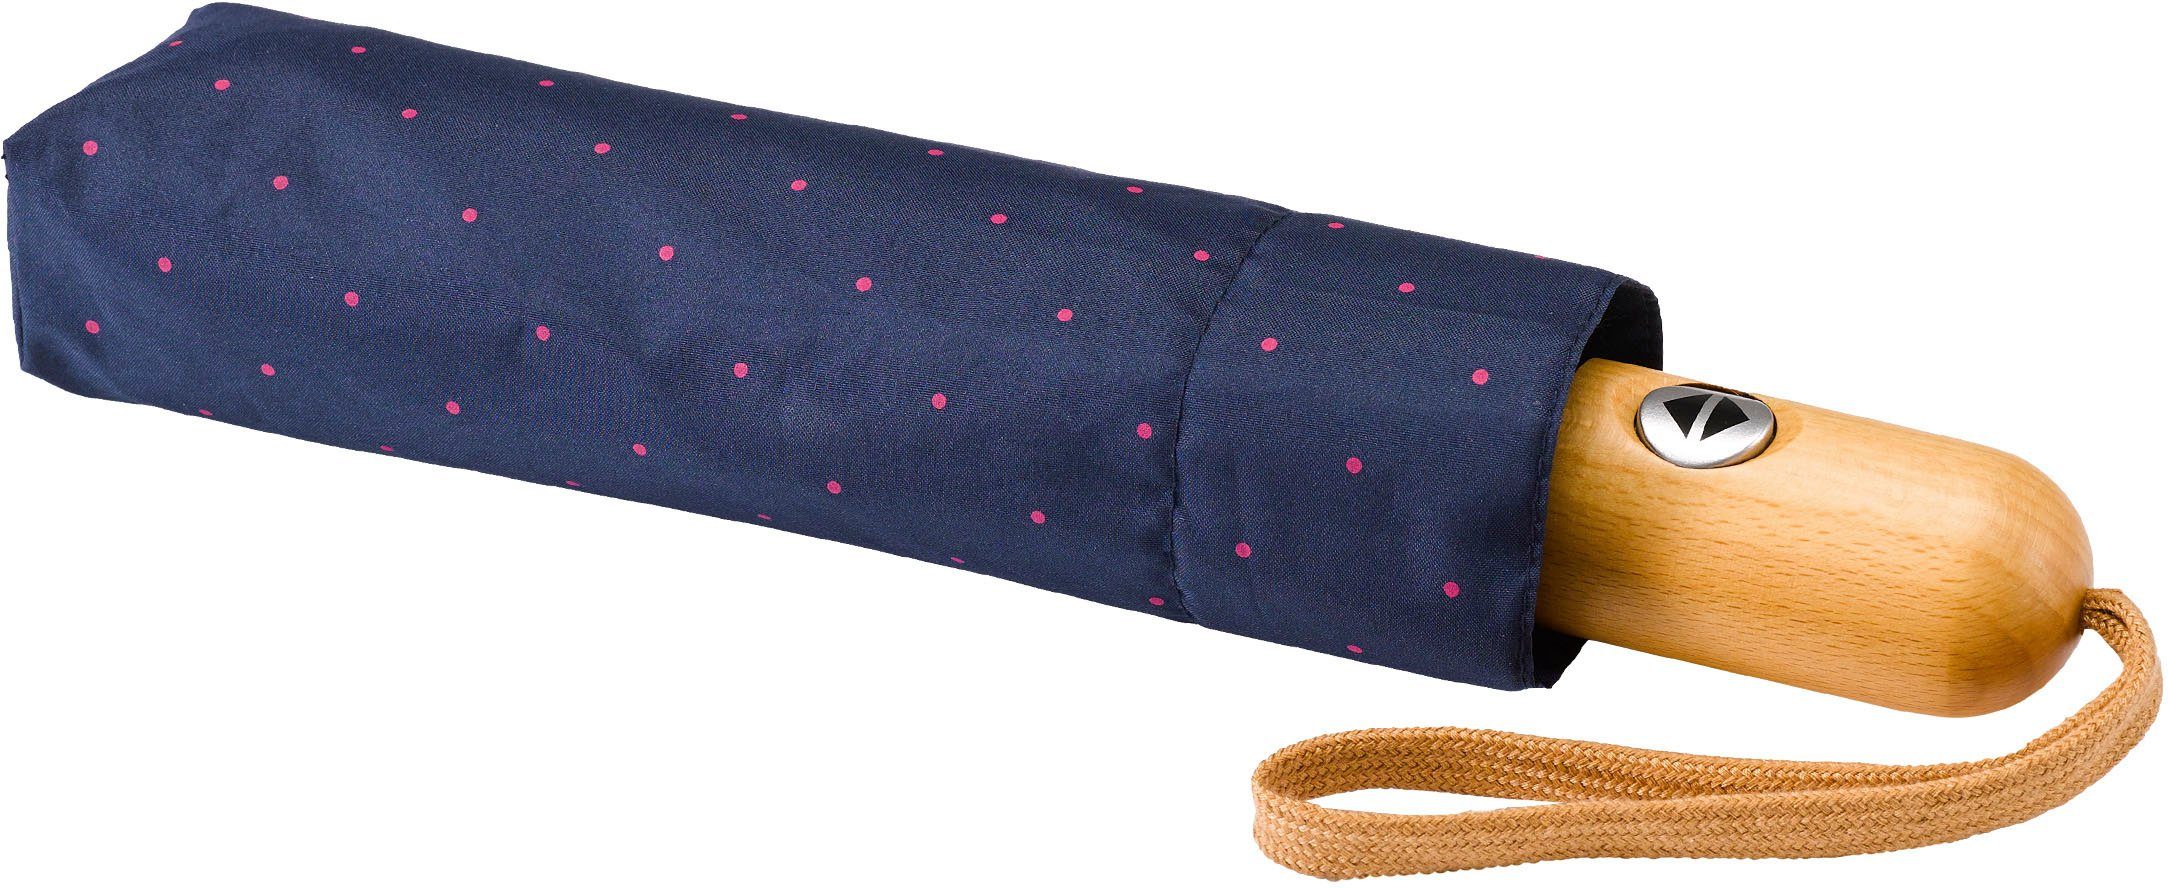 Taschenregenschirm Umwelt-Taschenschirm, pink Punkte marine, EuroSCHIRM®